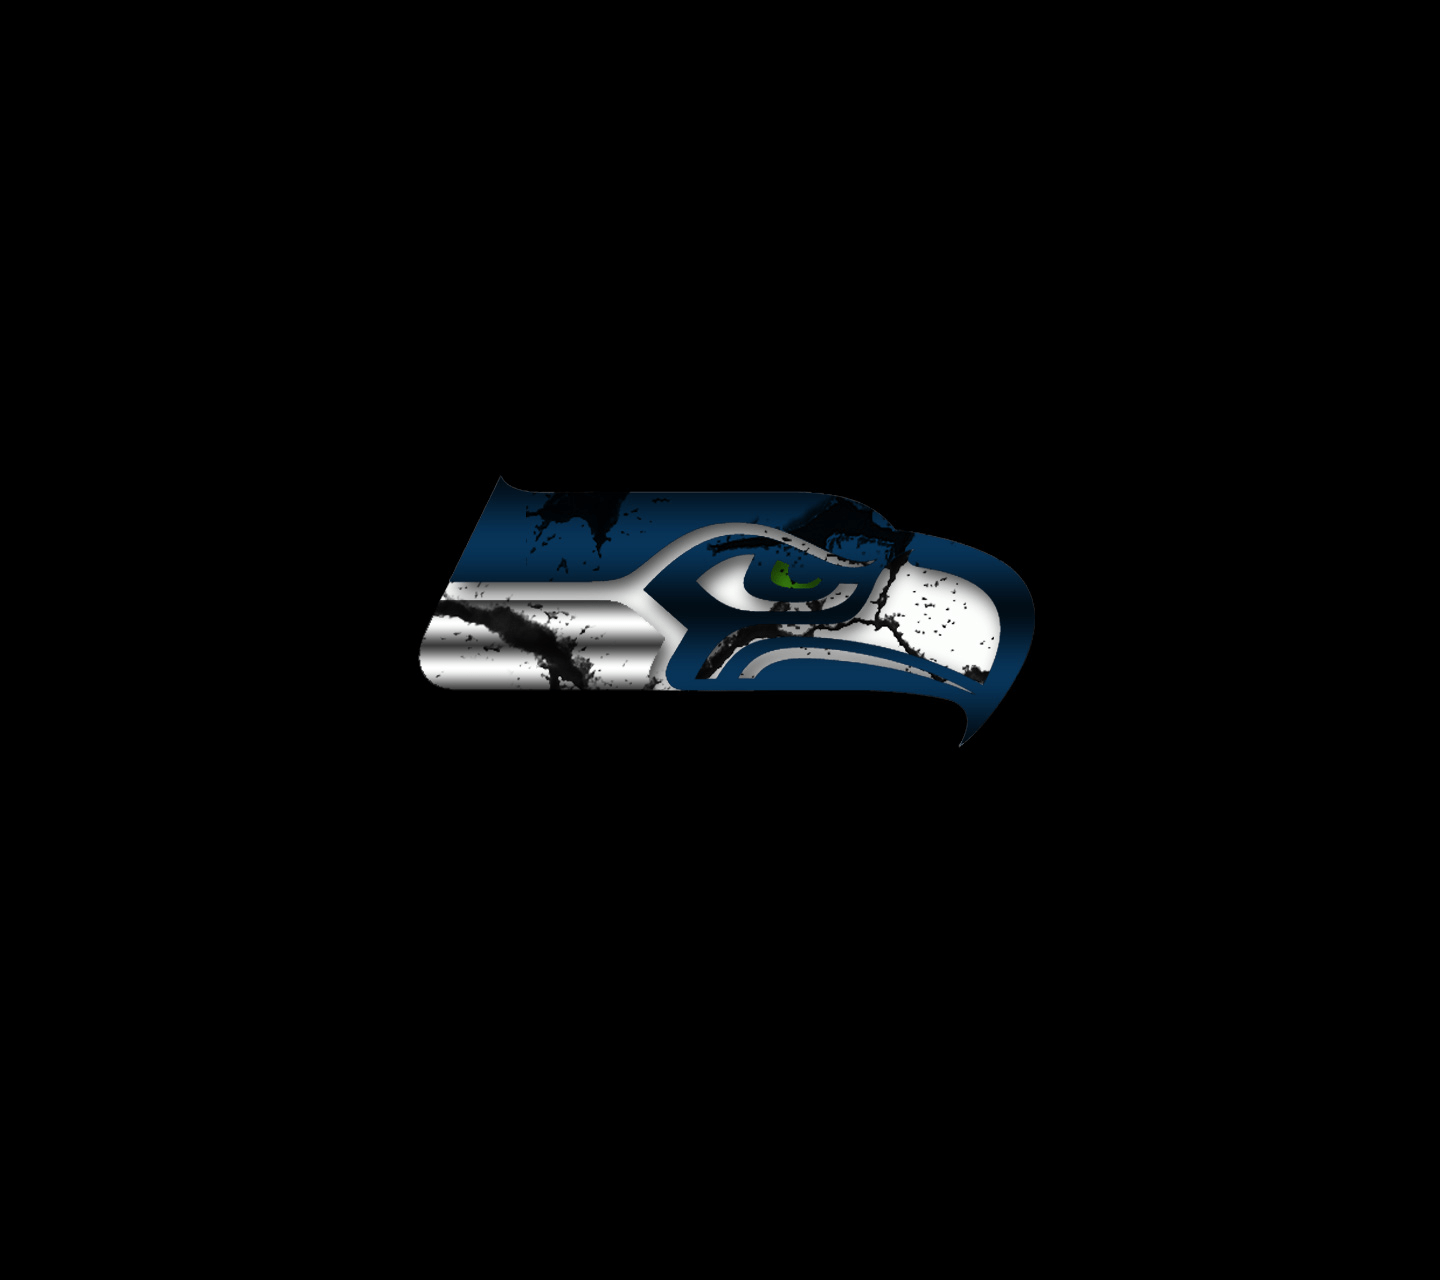 1440x1280 Tải xuống miễn phí hình nền seahawks logo hình nền 2014 new seahawks